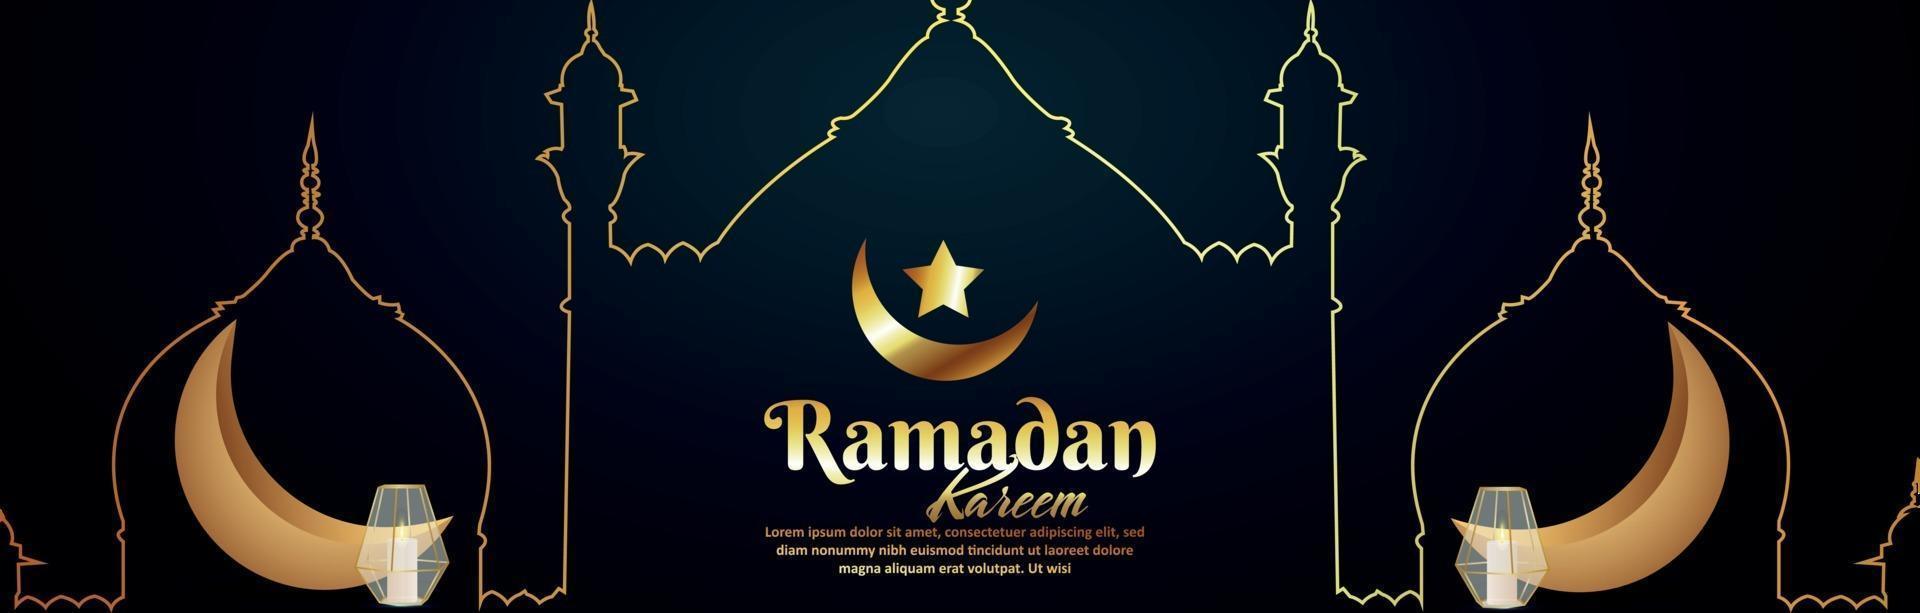 islamisches Festival Ramadan Kareem mit goldenem Mond und Laterne vektor